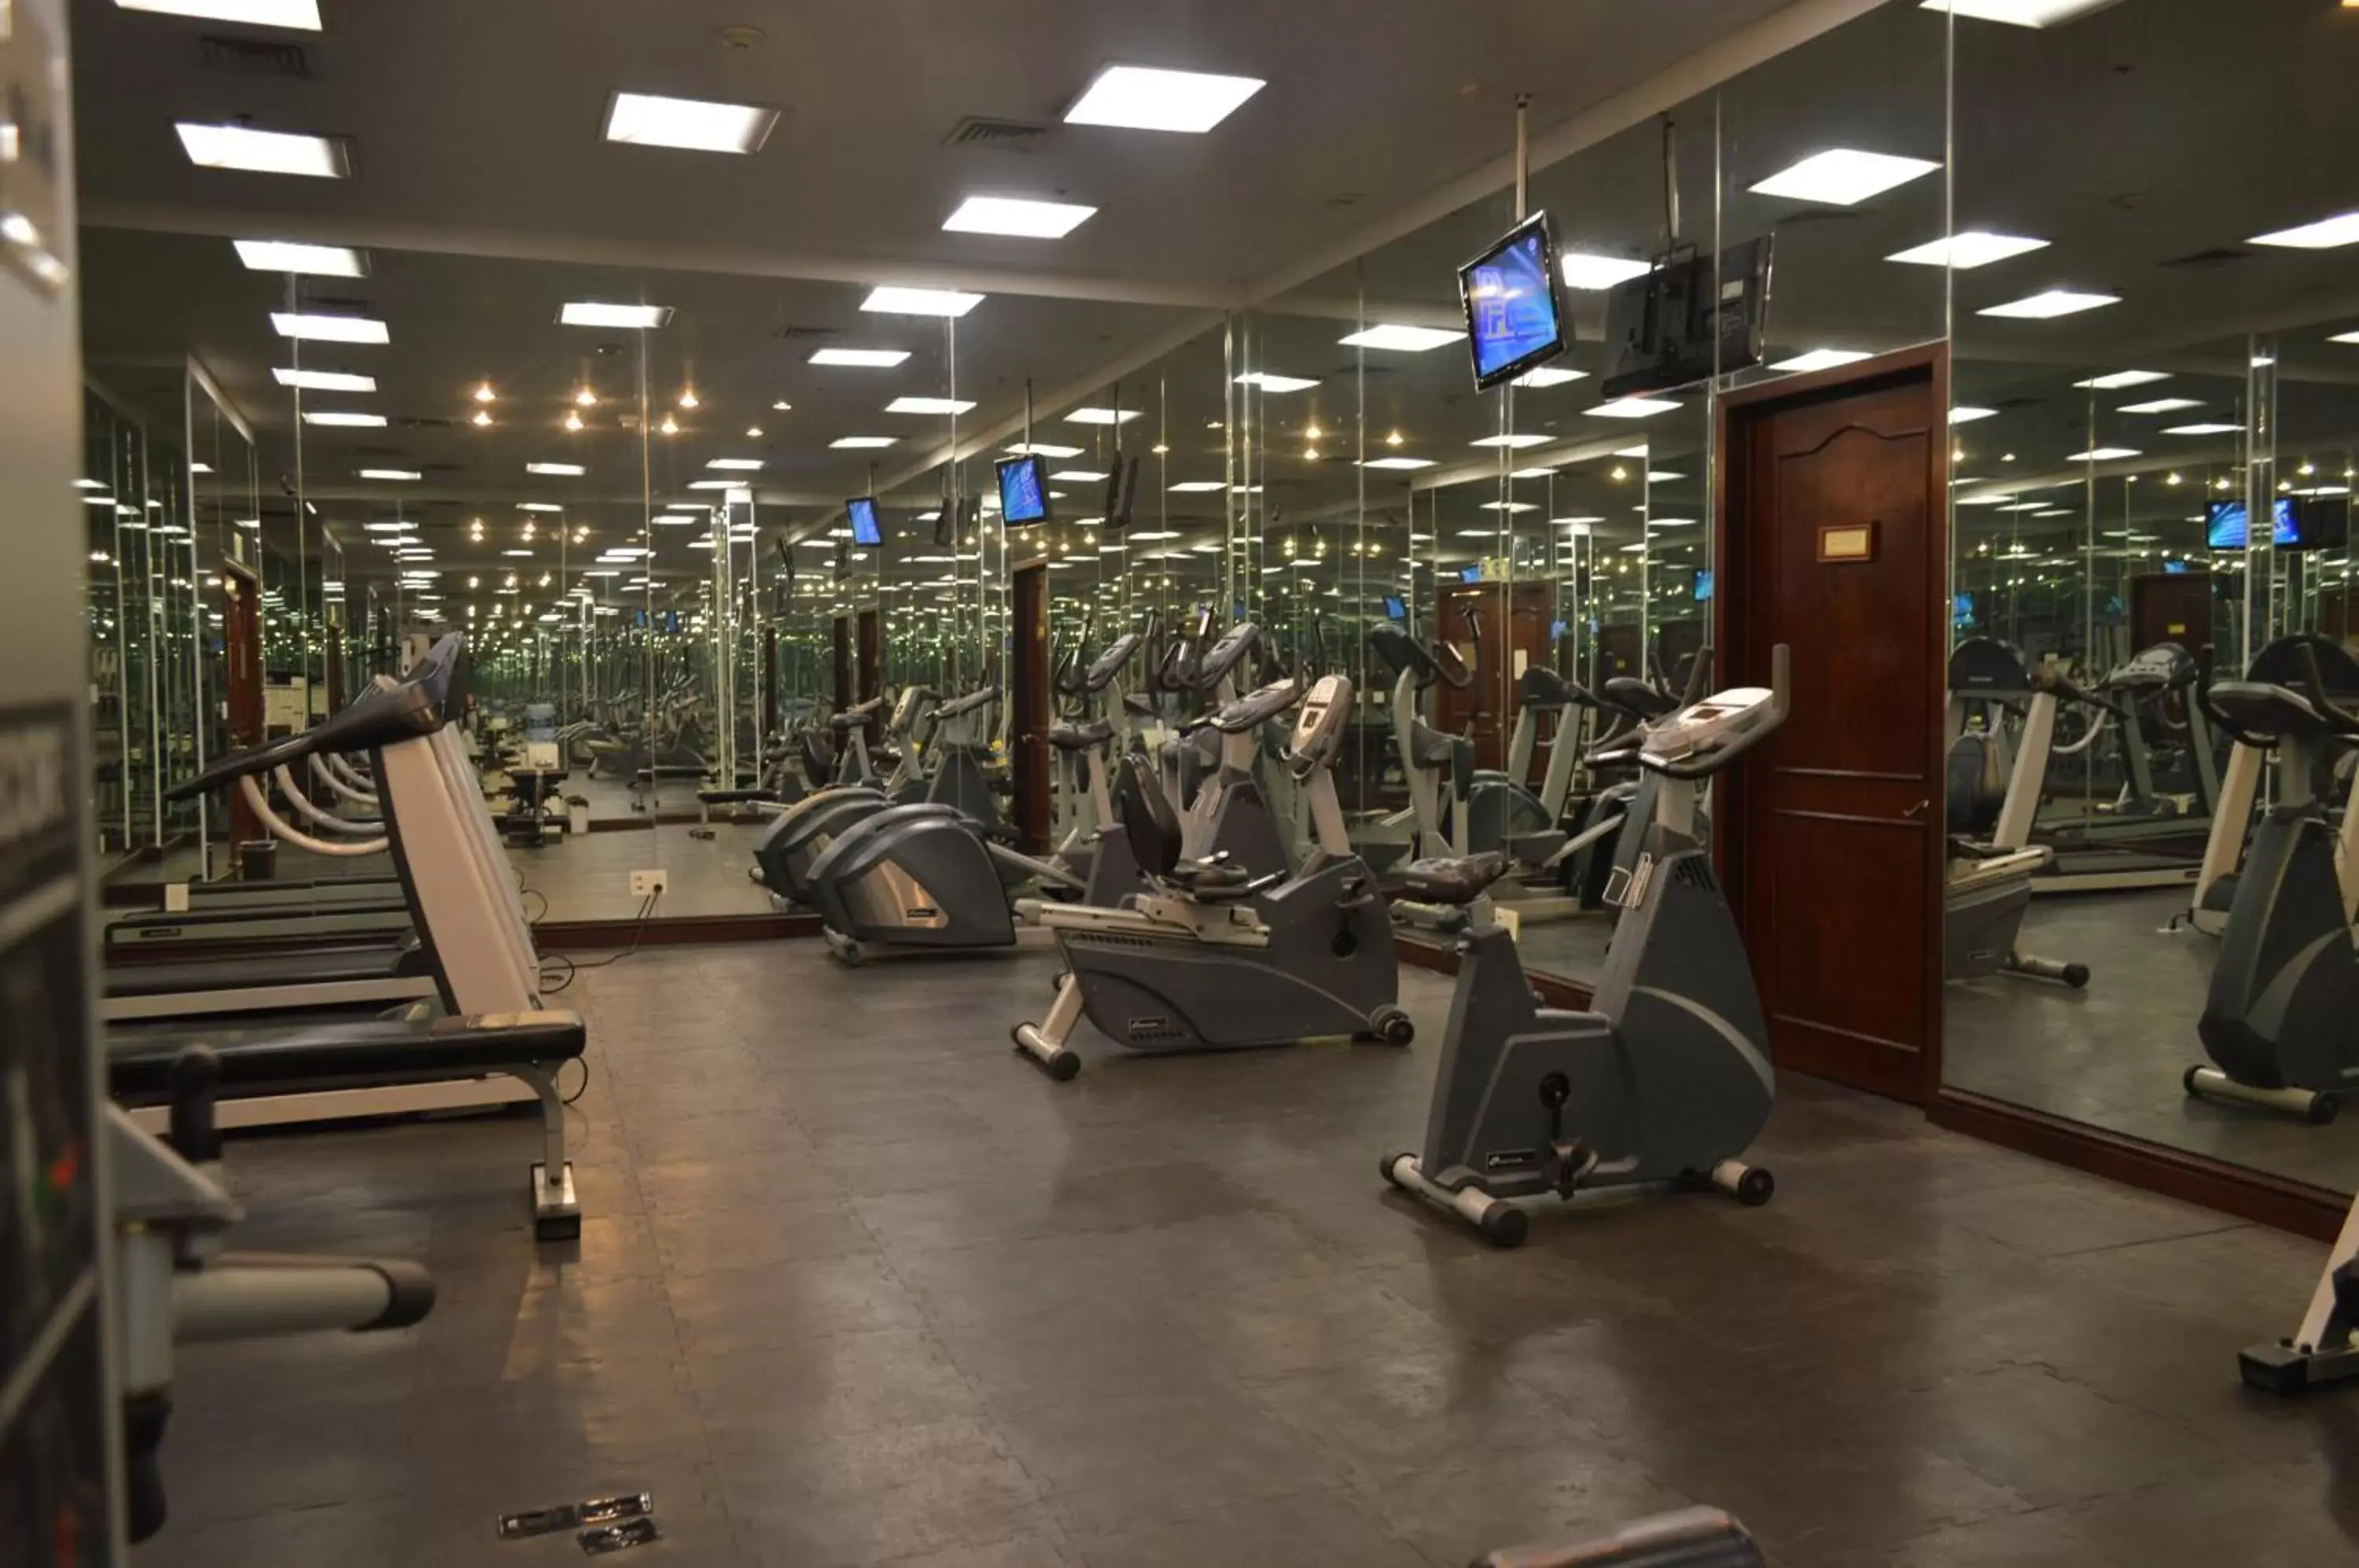 Fitness centre/facilities, Fitness Center/Facilities in Gran Hotel Ciudad de Mexico